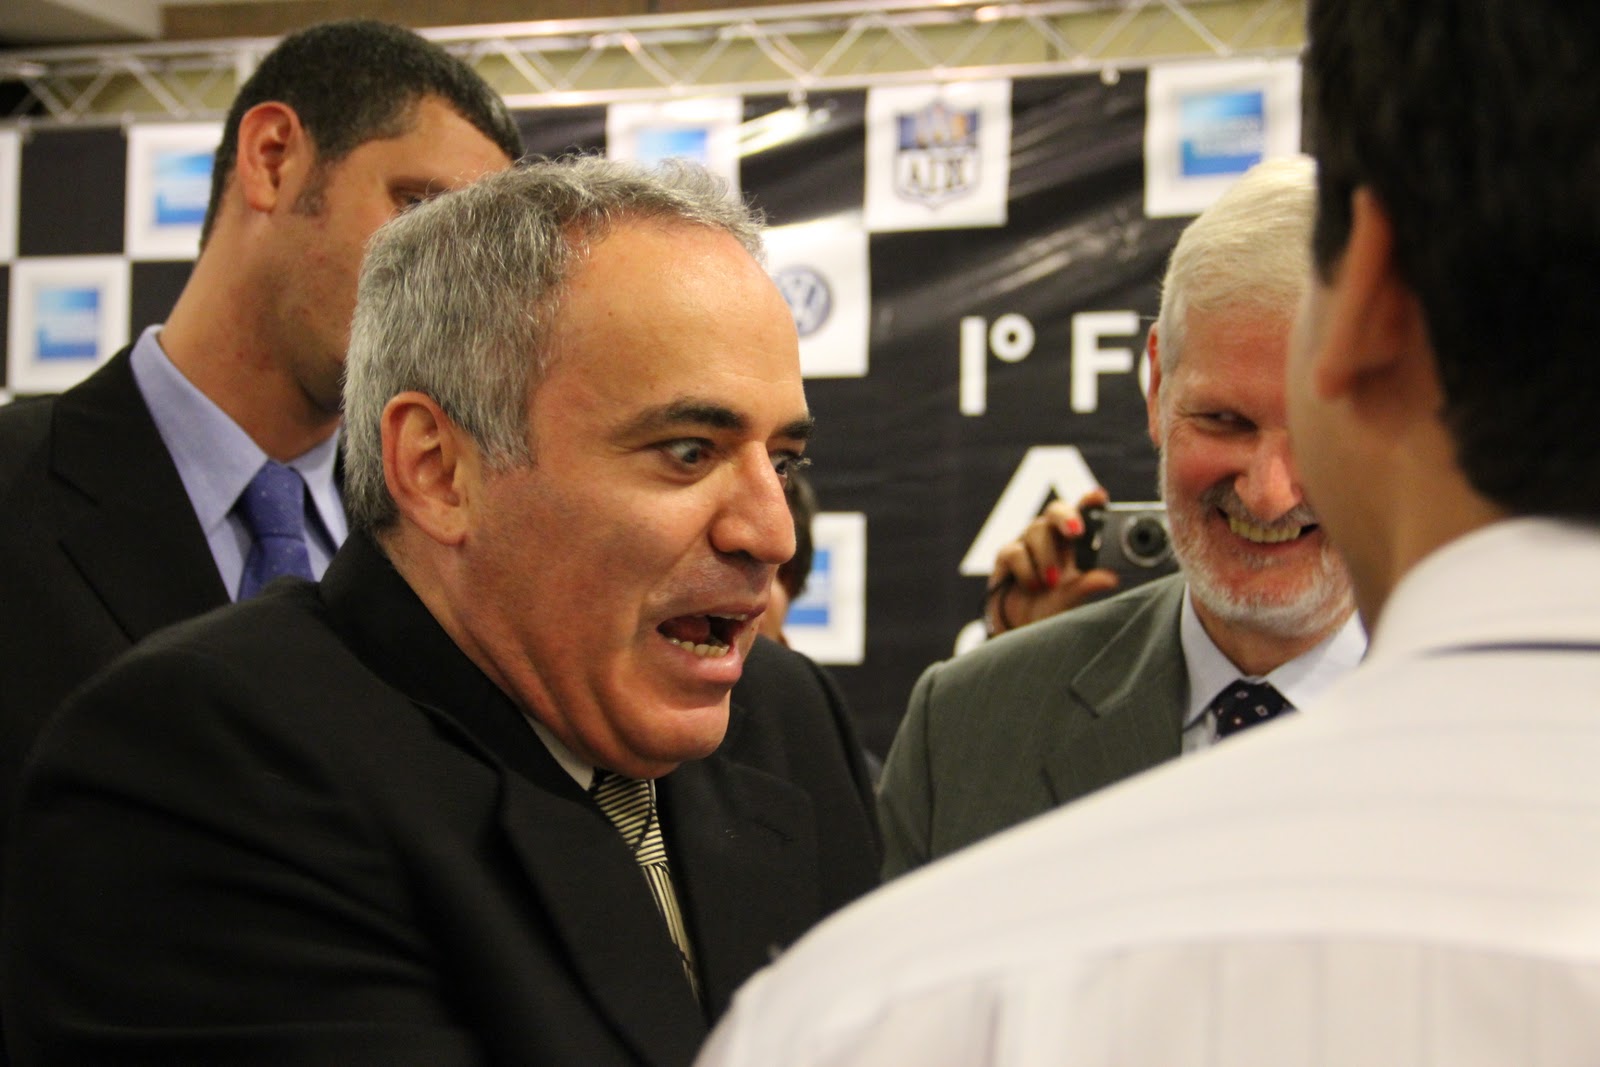 Retorno ao xadrez: Entrevista com Garry Kasparov. 